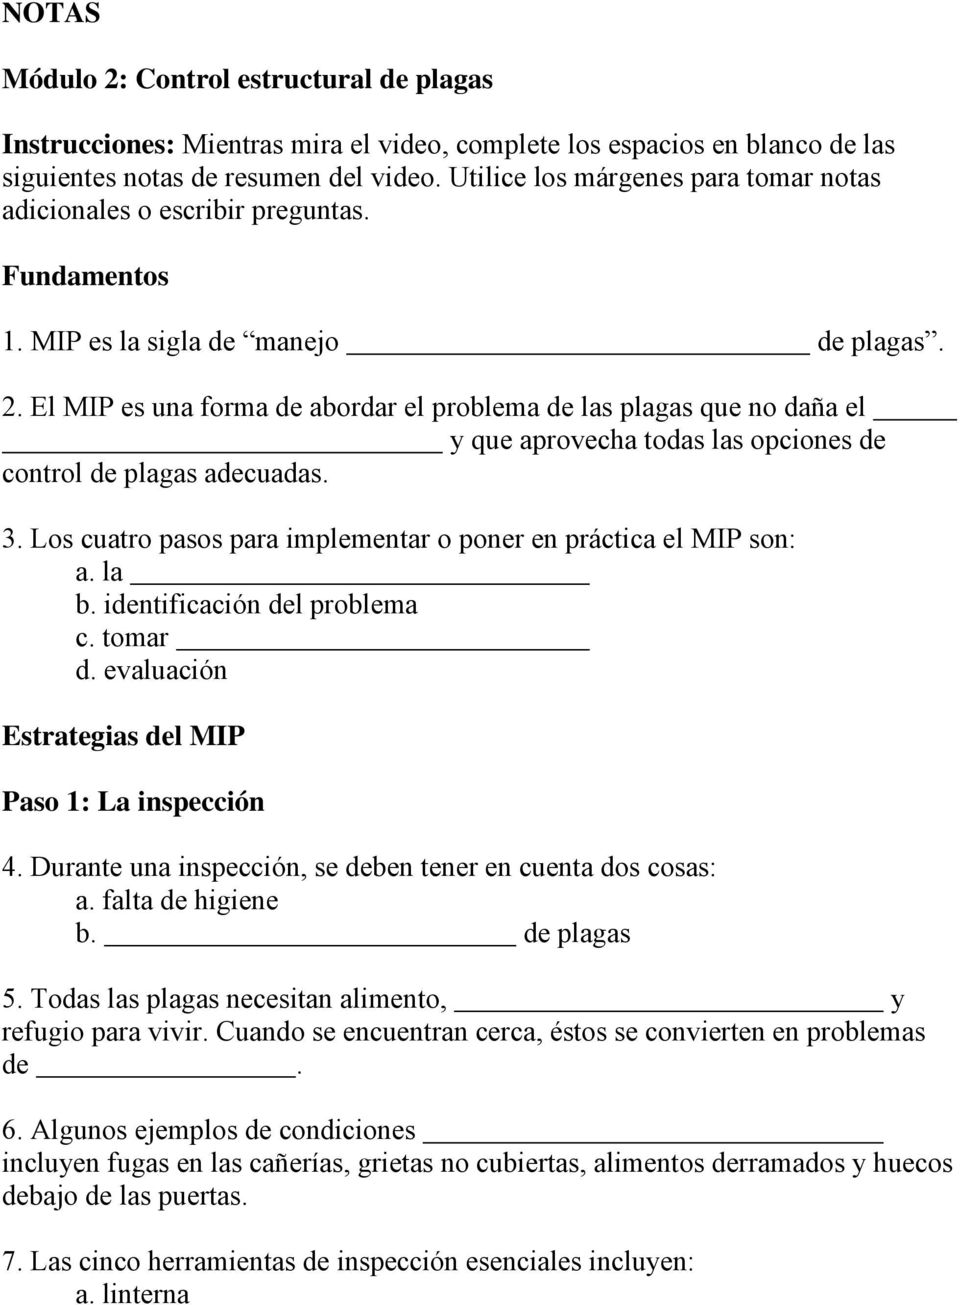 control de plagas adecuadas 3 Los cuatro pasos para implementar o poner en práctica el MIP son: a la b identificación del problema c tomar d evaluación Estrategias del MIP Paso 1: La inspección 4